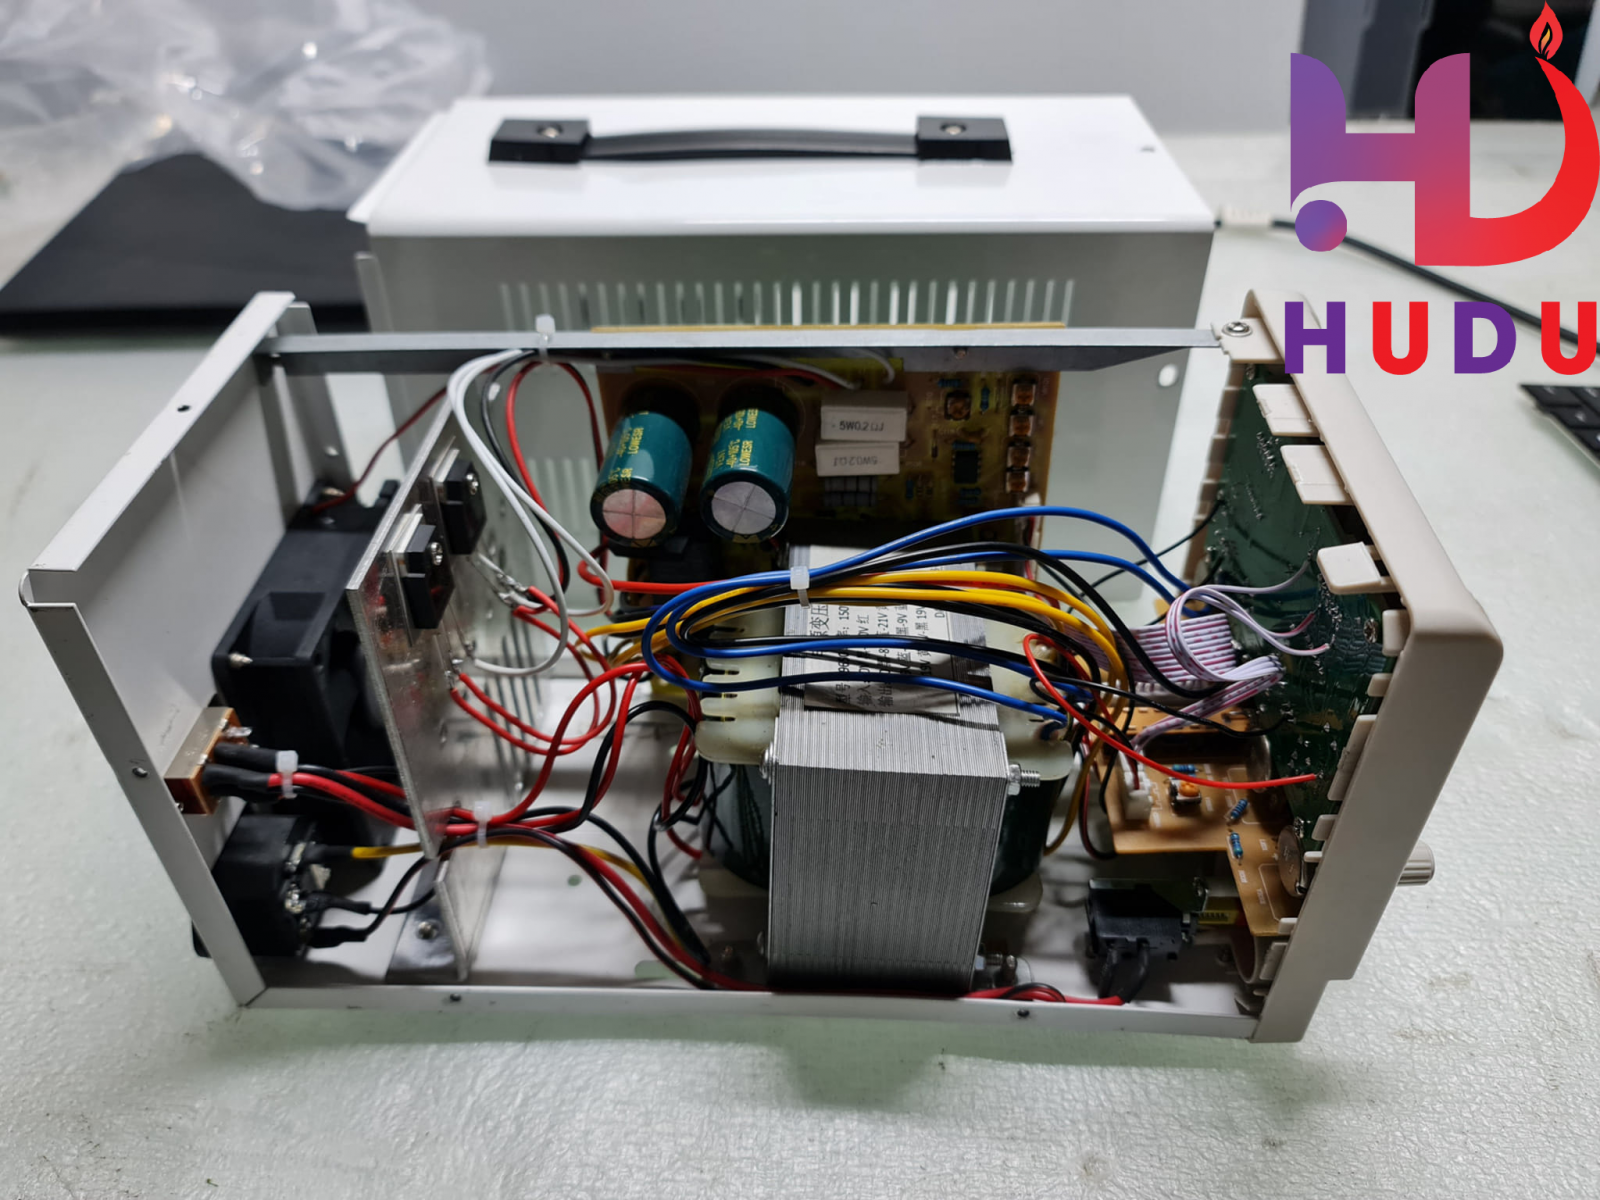 Linh kiện Hudu cung cấp máy cấp nguồn 30V-5A PS-305DM đảm bảo chất lượng tốt